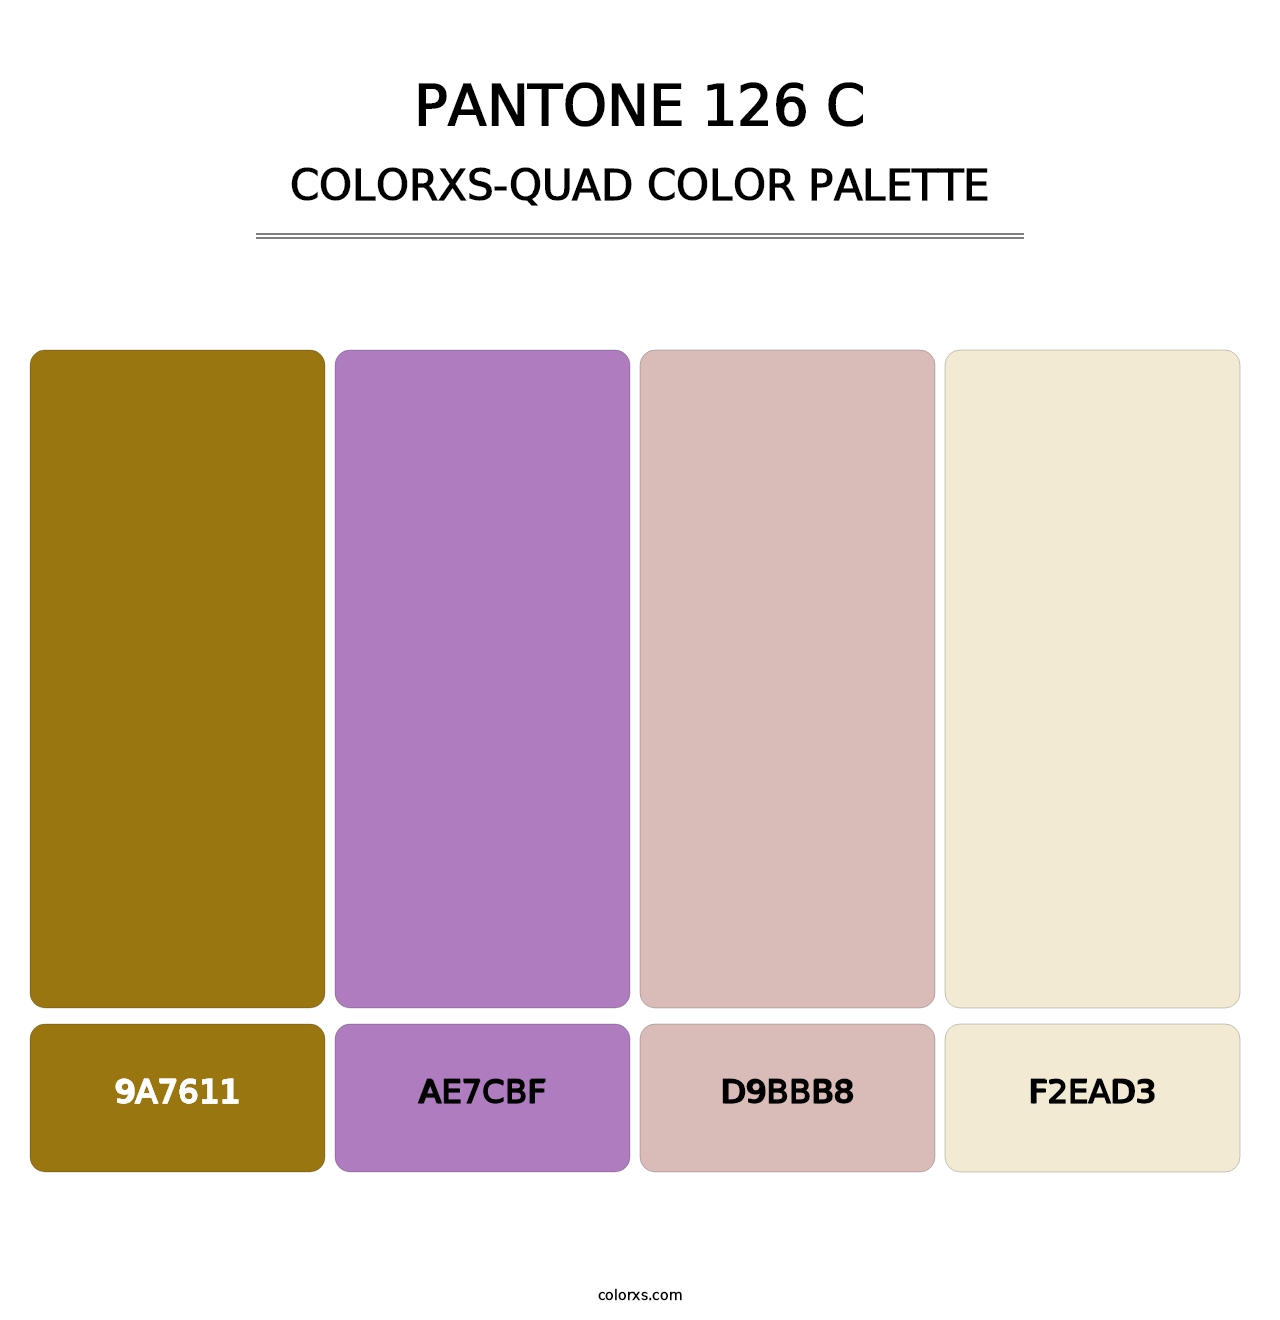 PANTONE 126 C - Colorxs Quad Palette